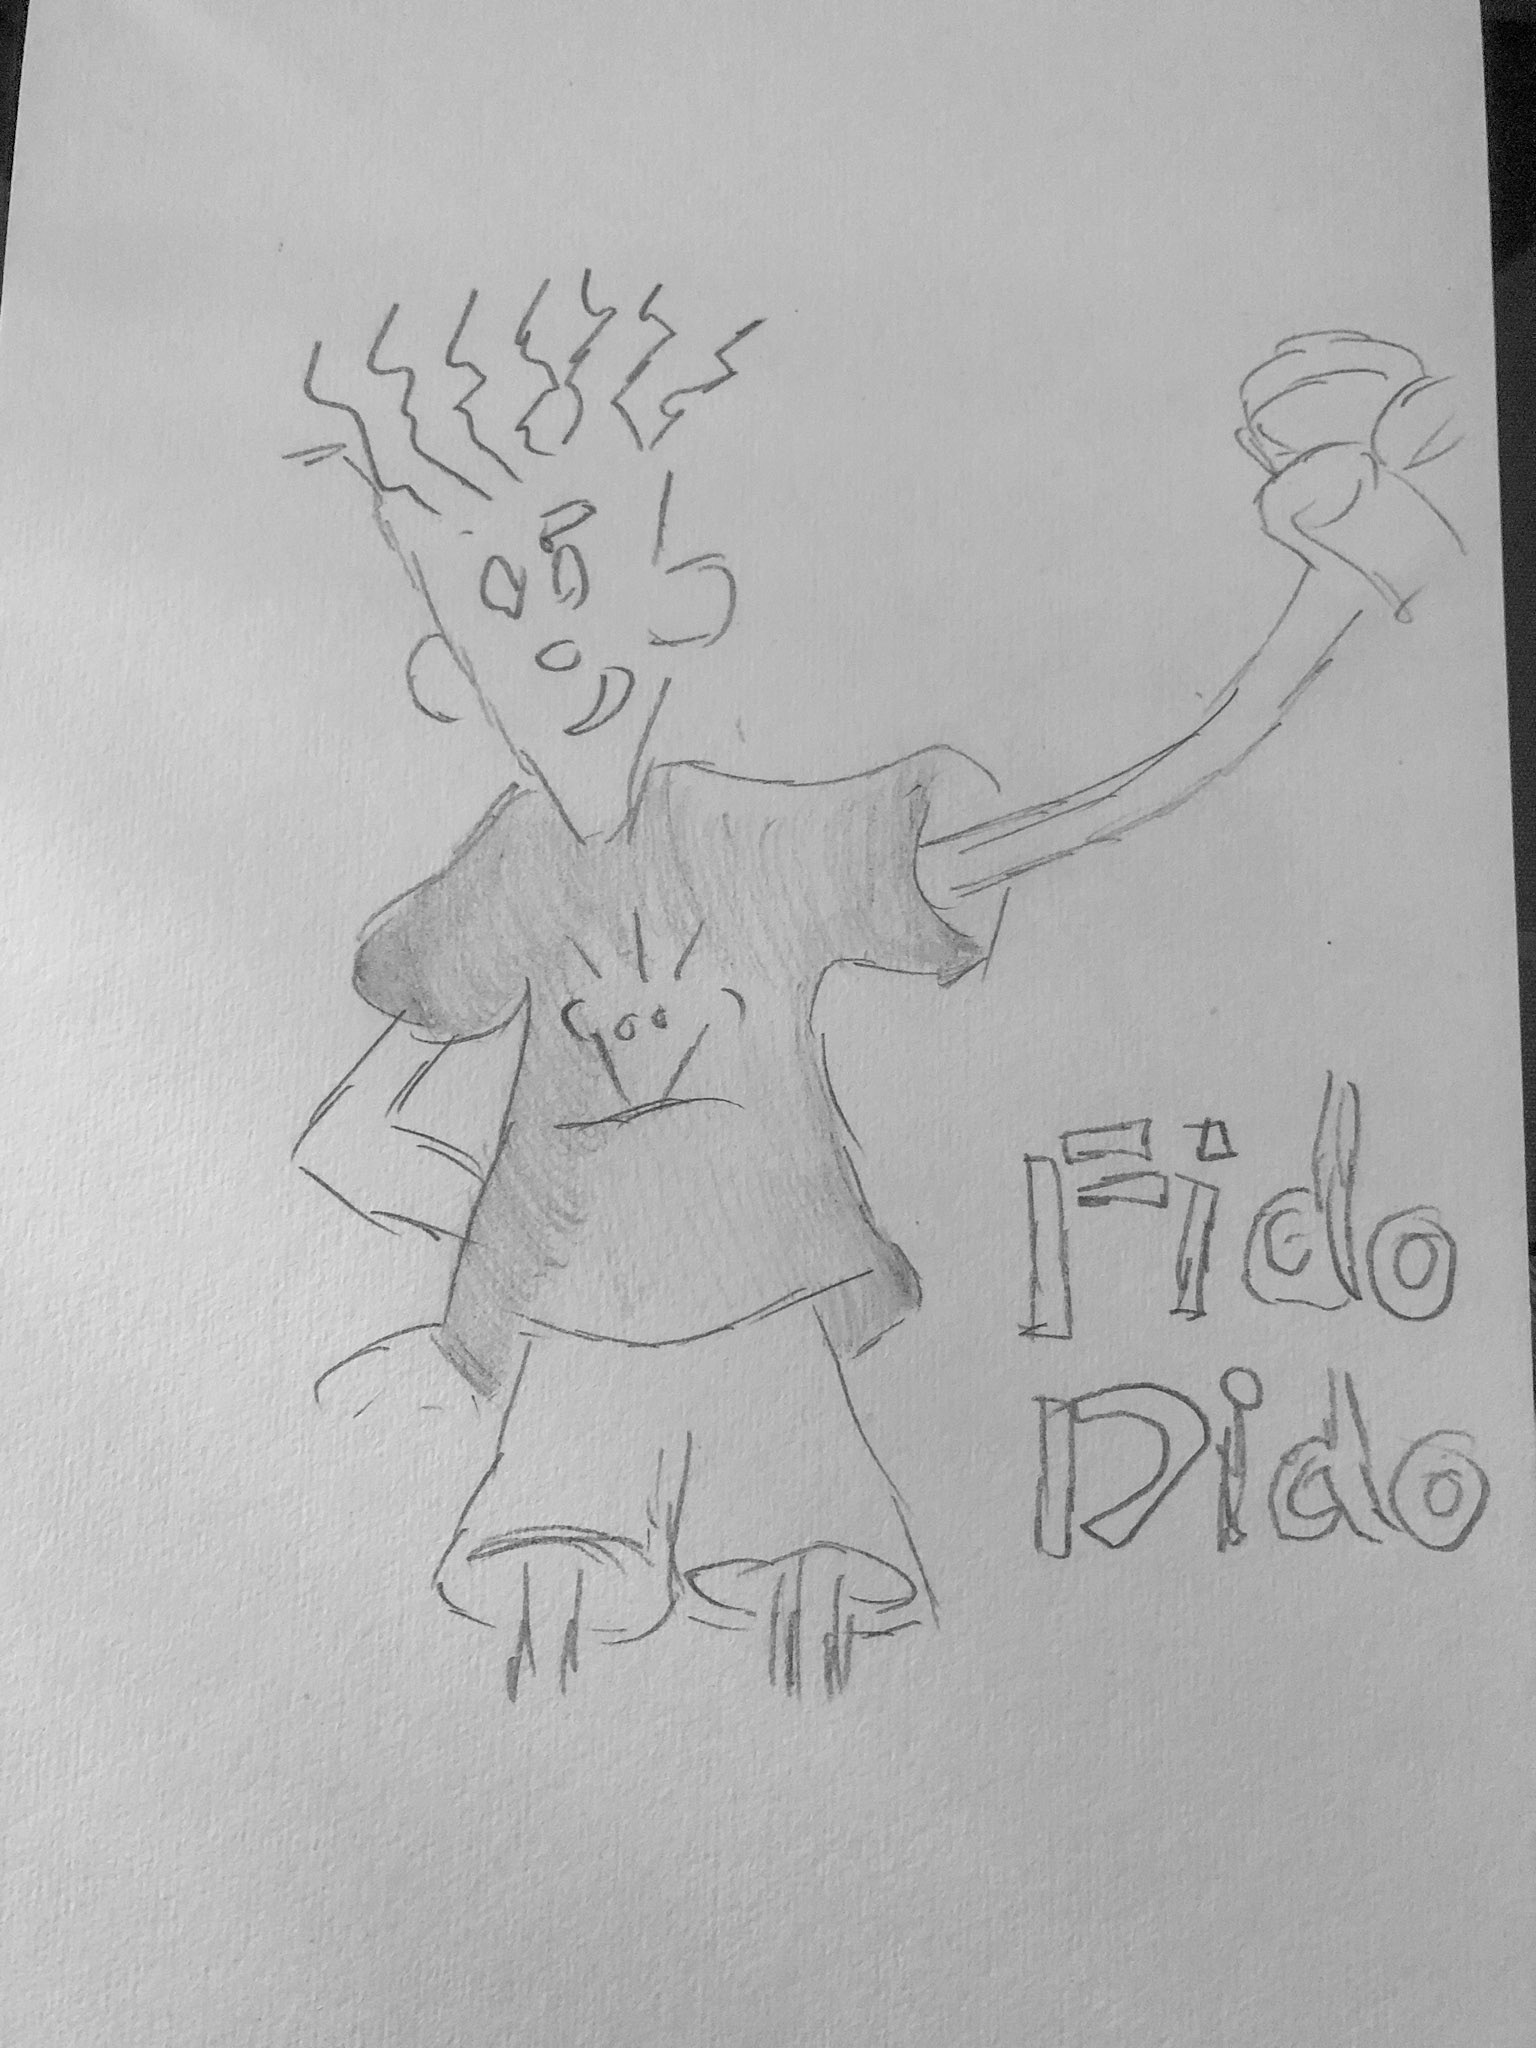 JAE ART - Fido Dido - The 7up Cartoon character